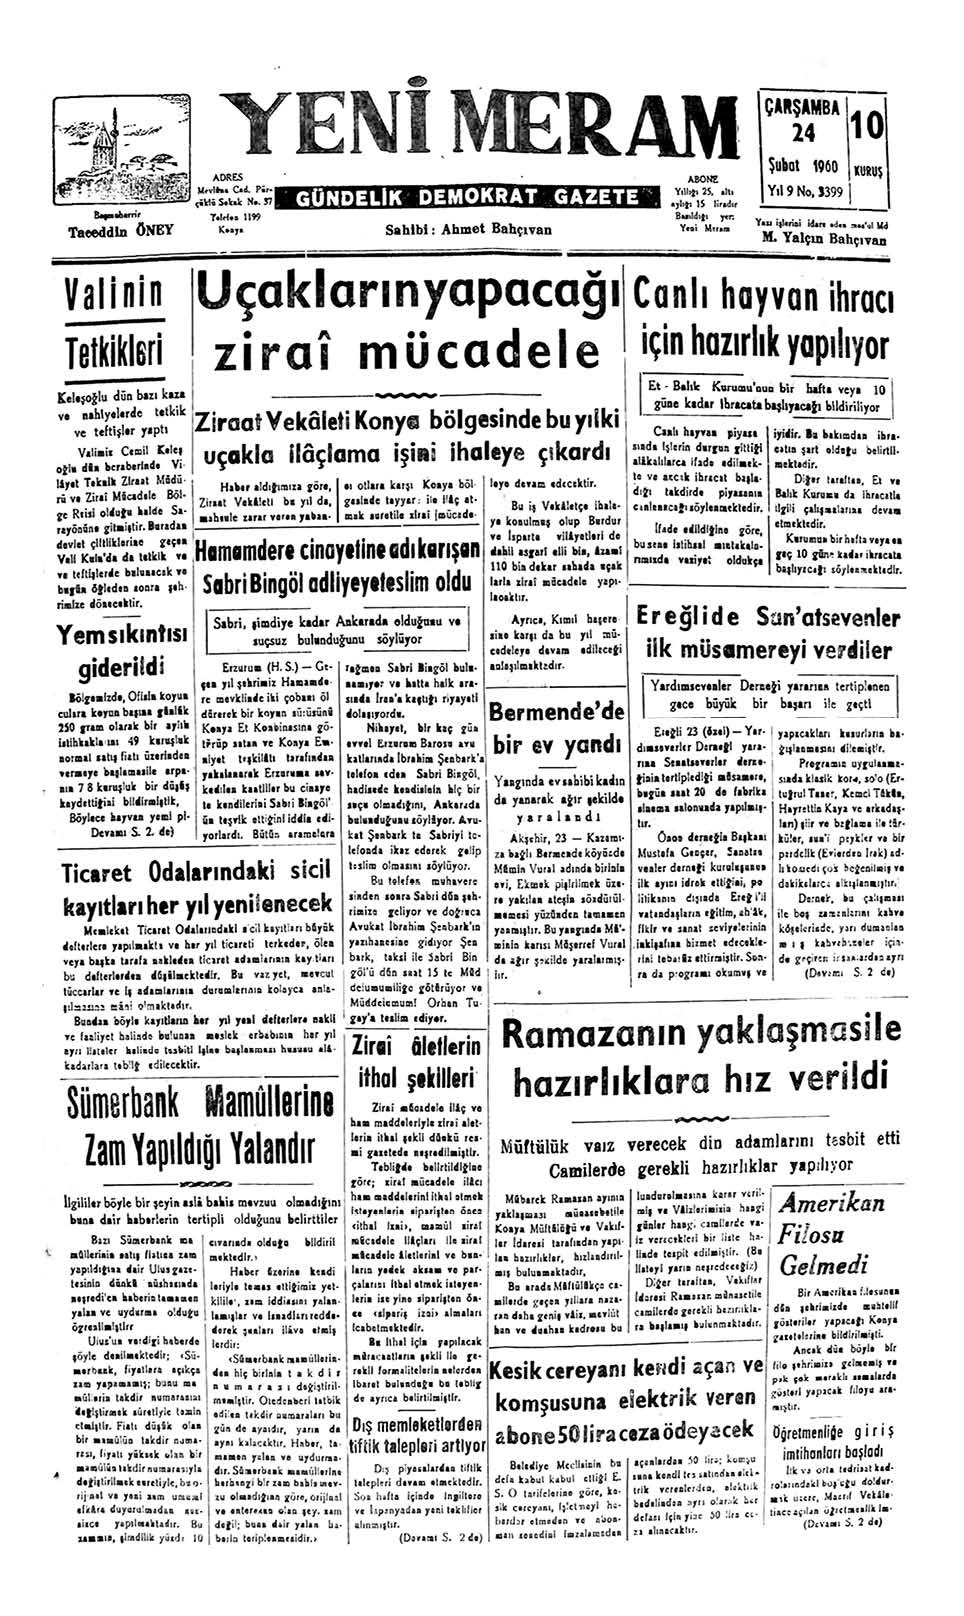 24 Şubat 2023 Yeni Meram Gazetesi
